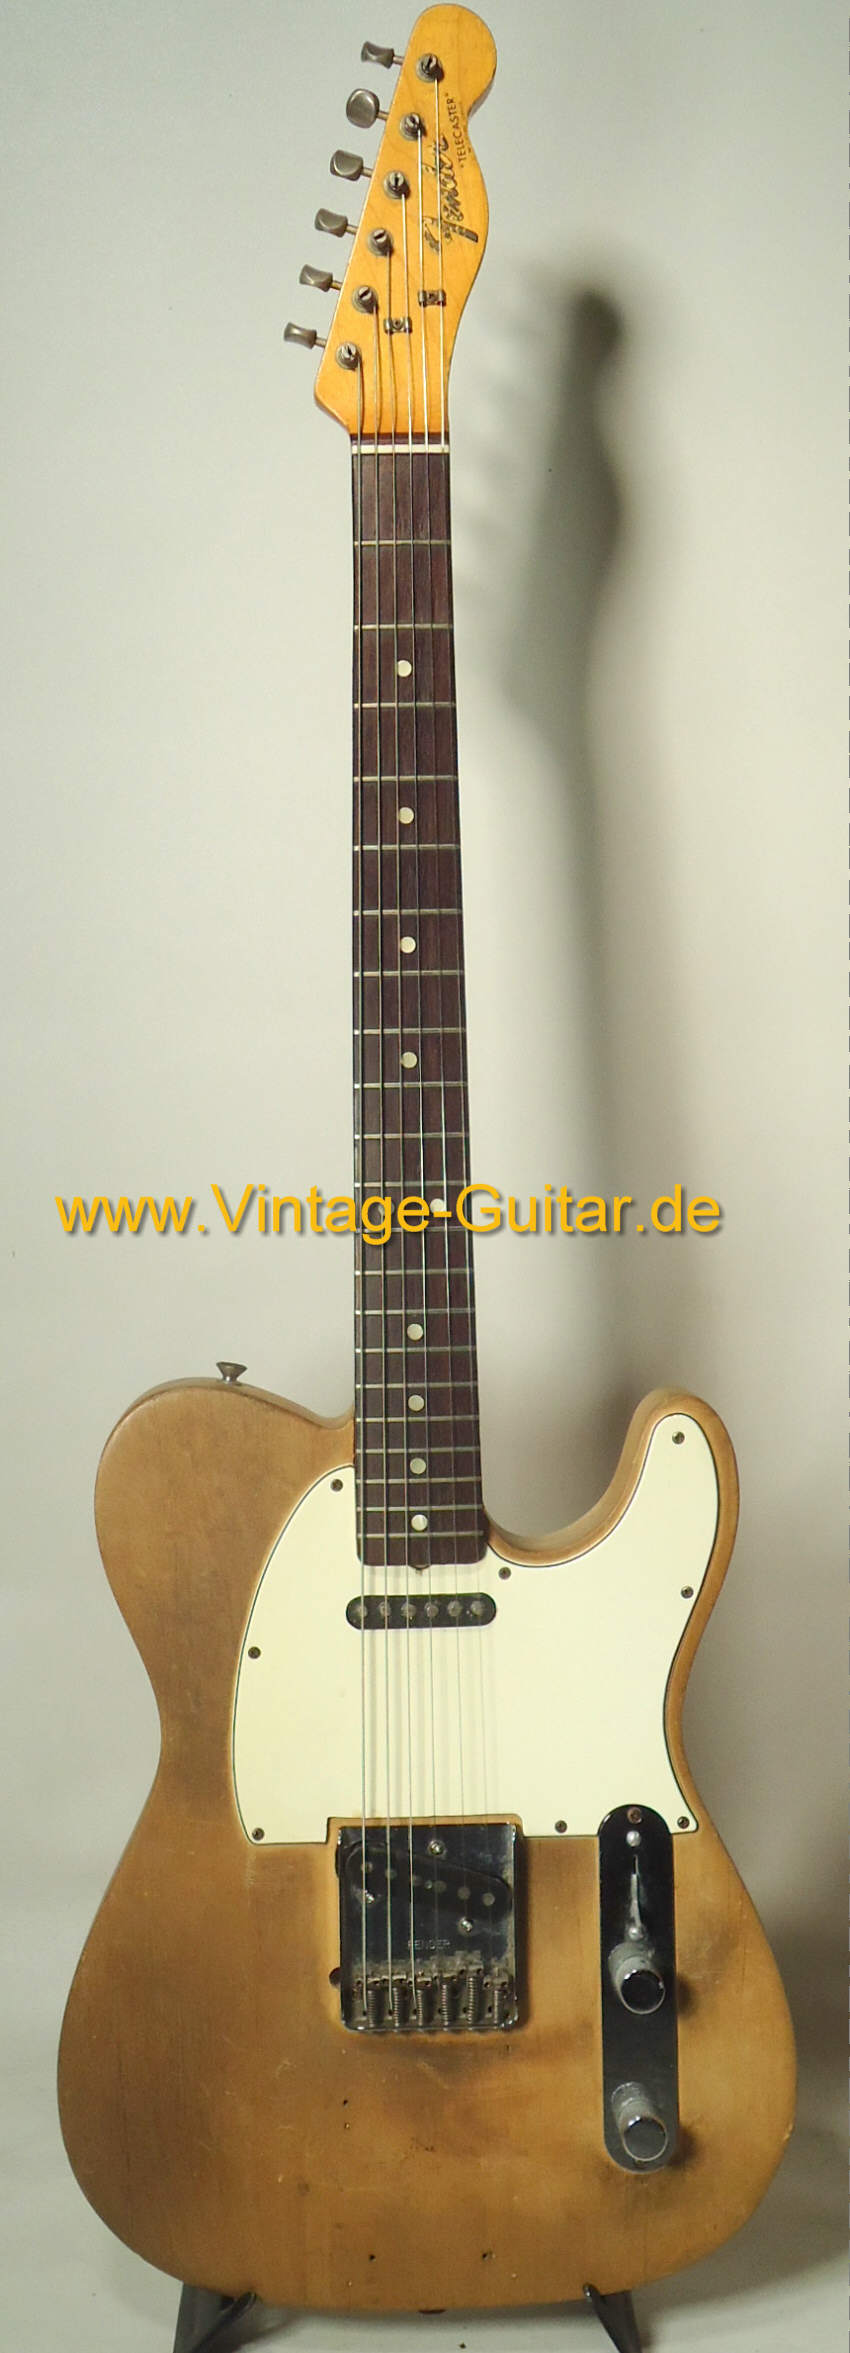 Fender Telecaster 1966 stripped.jpg